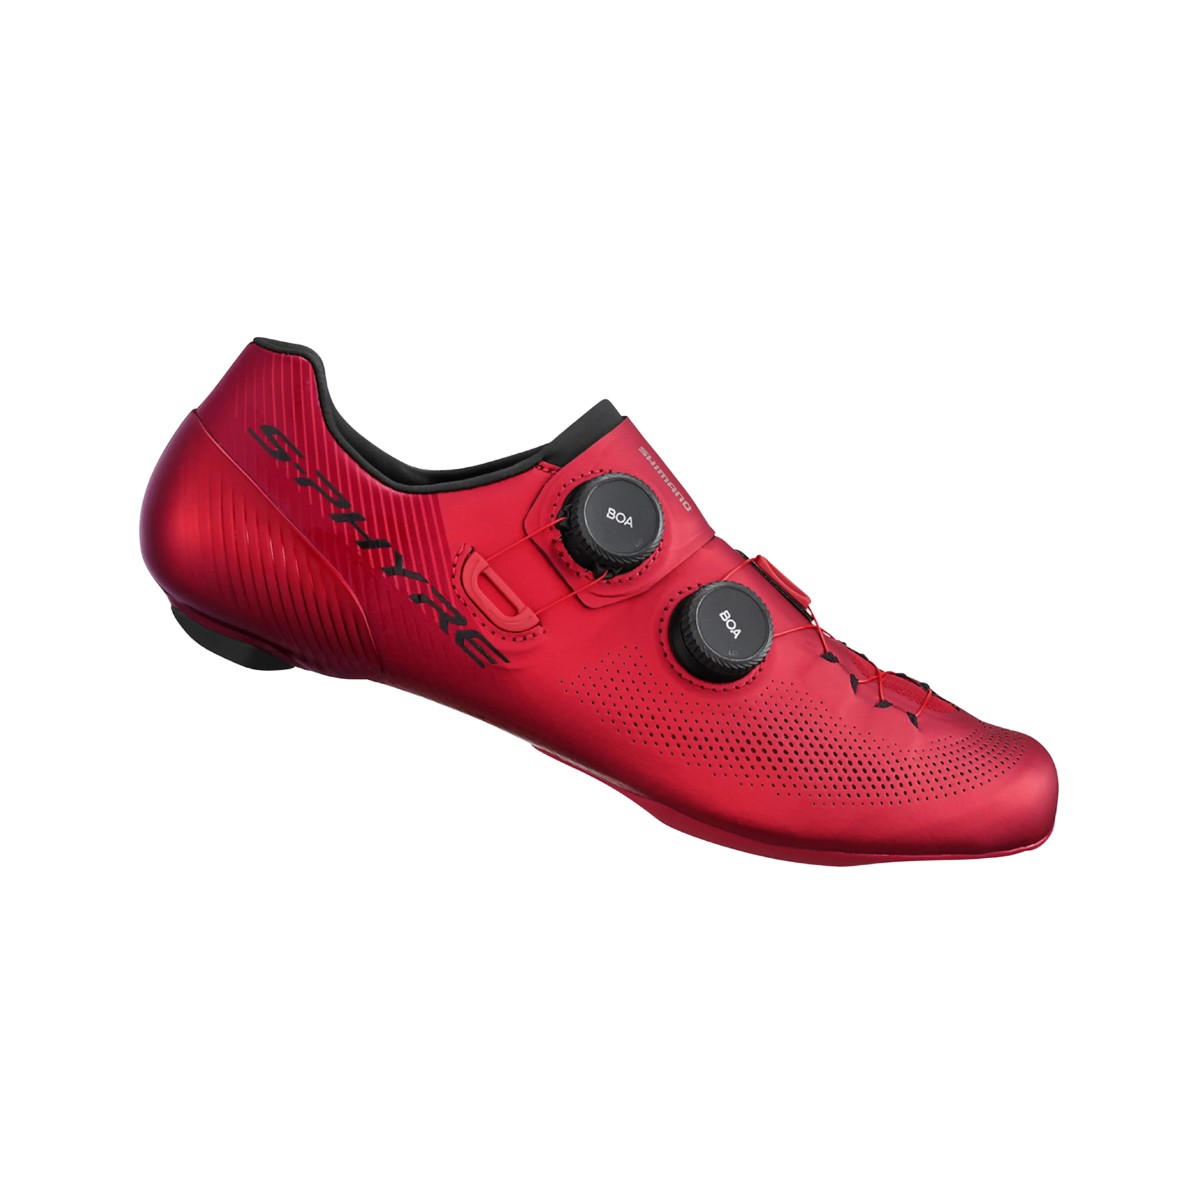 Schuhe Shimano RC903 S-PHYRE Rot, Größe 42,5 - EUR